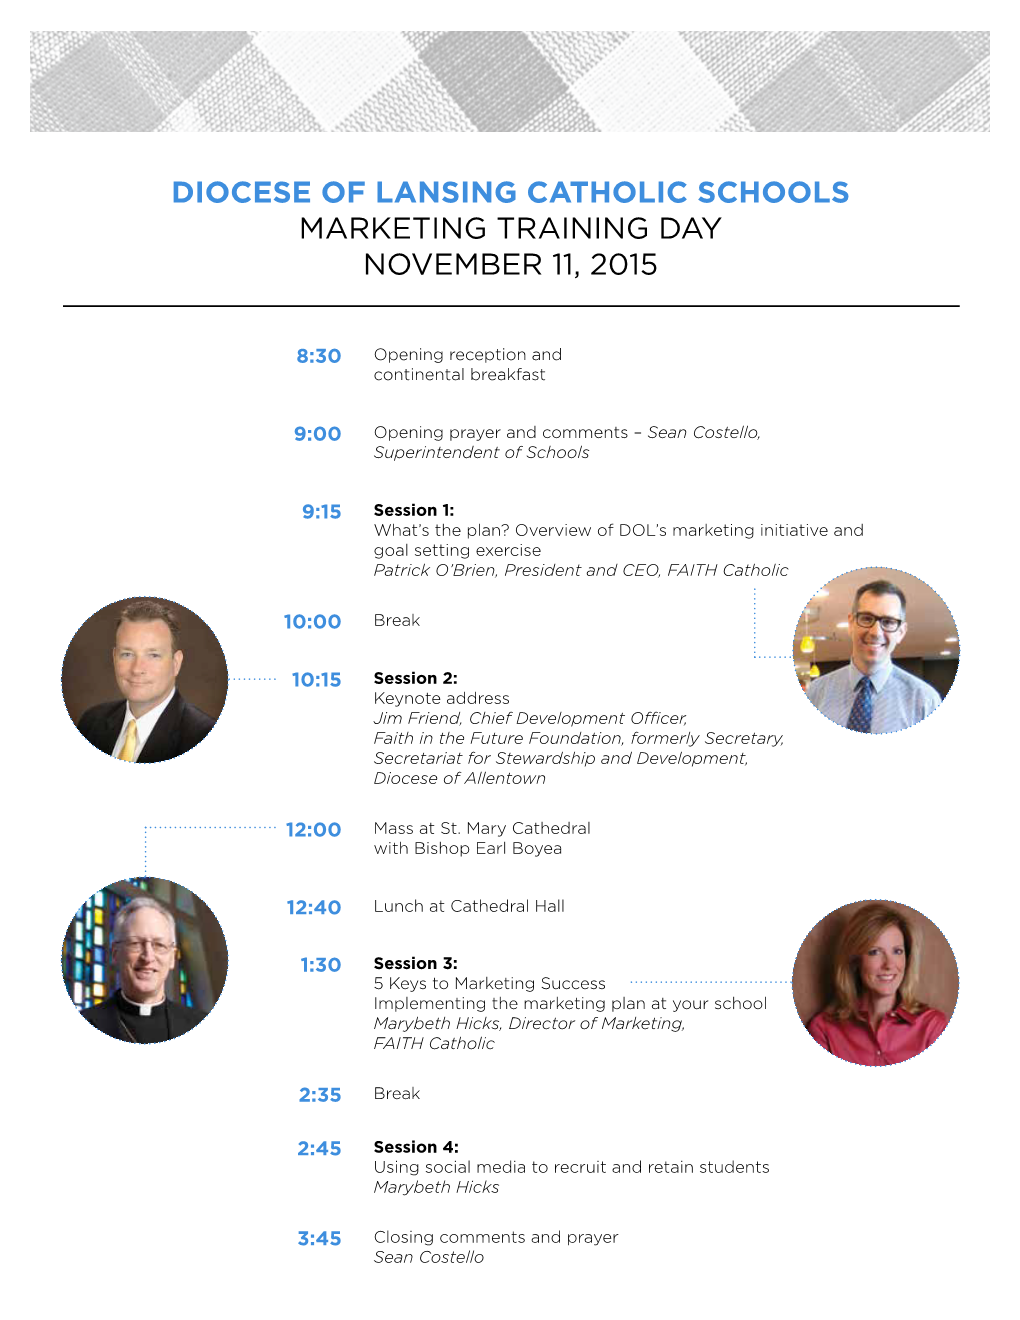 Diocese of Lansing Catholic Schools Marketing Training Day November 11, 2015